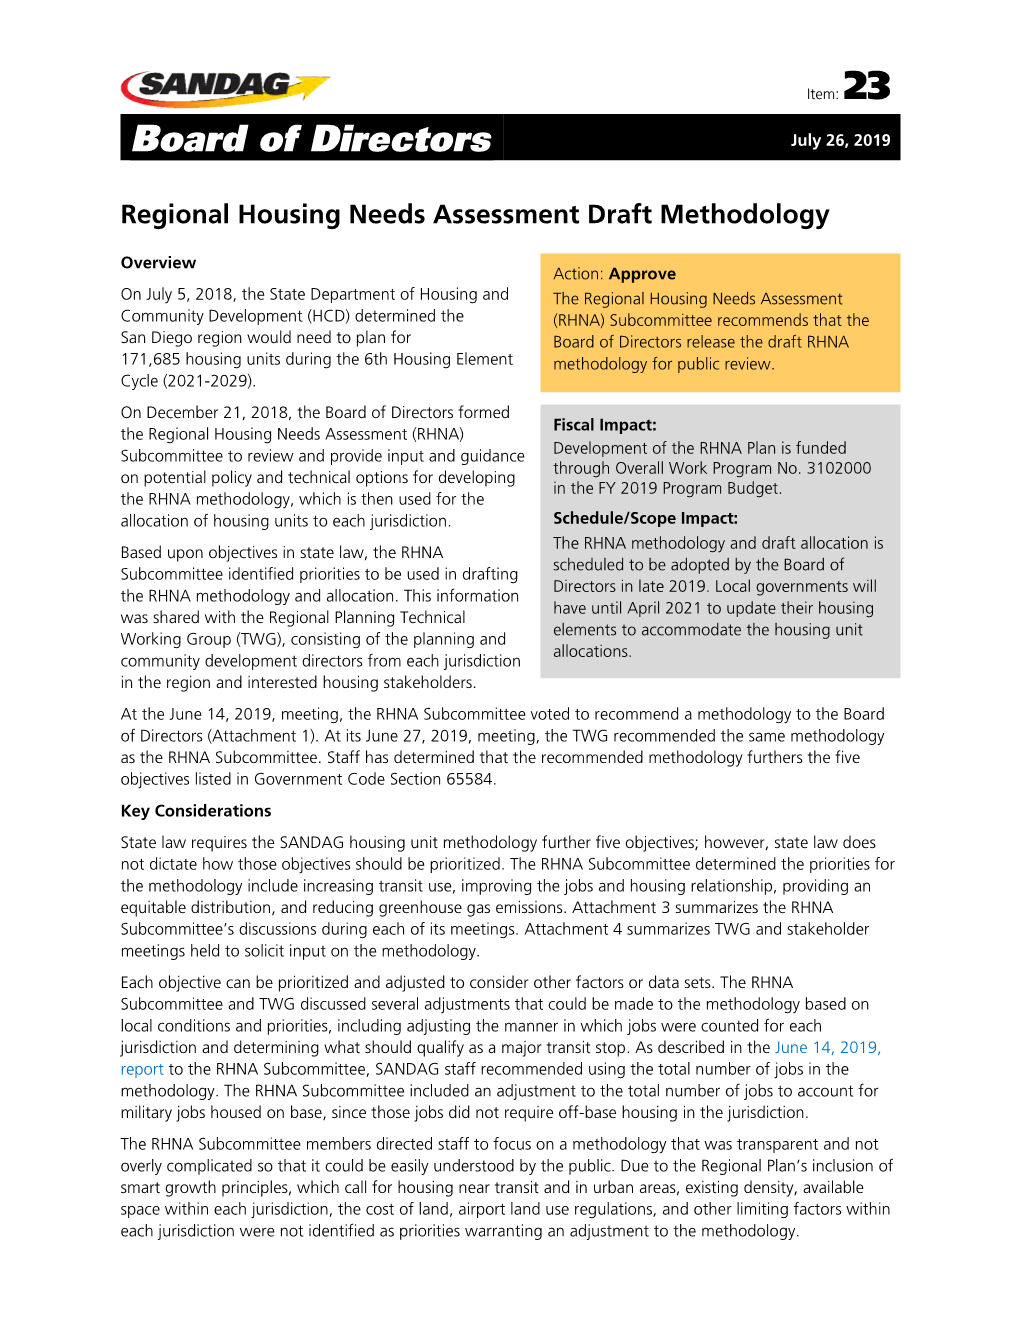 Regional Housing Needs Assessment Draft Methodology